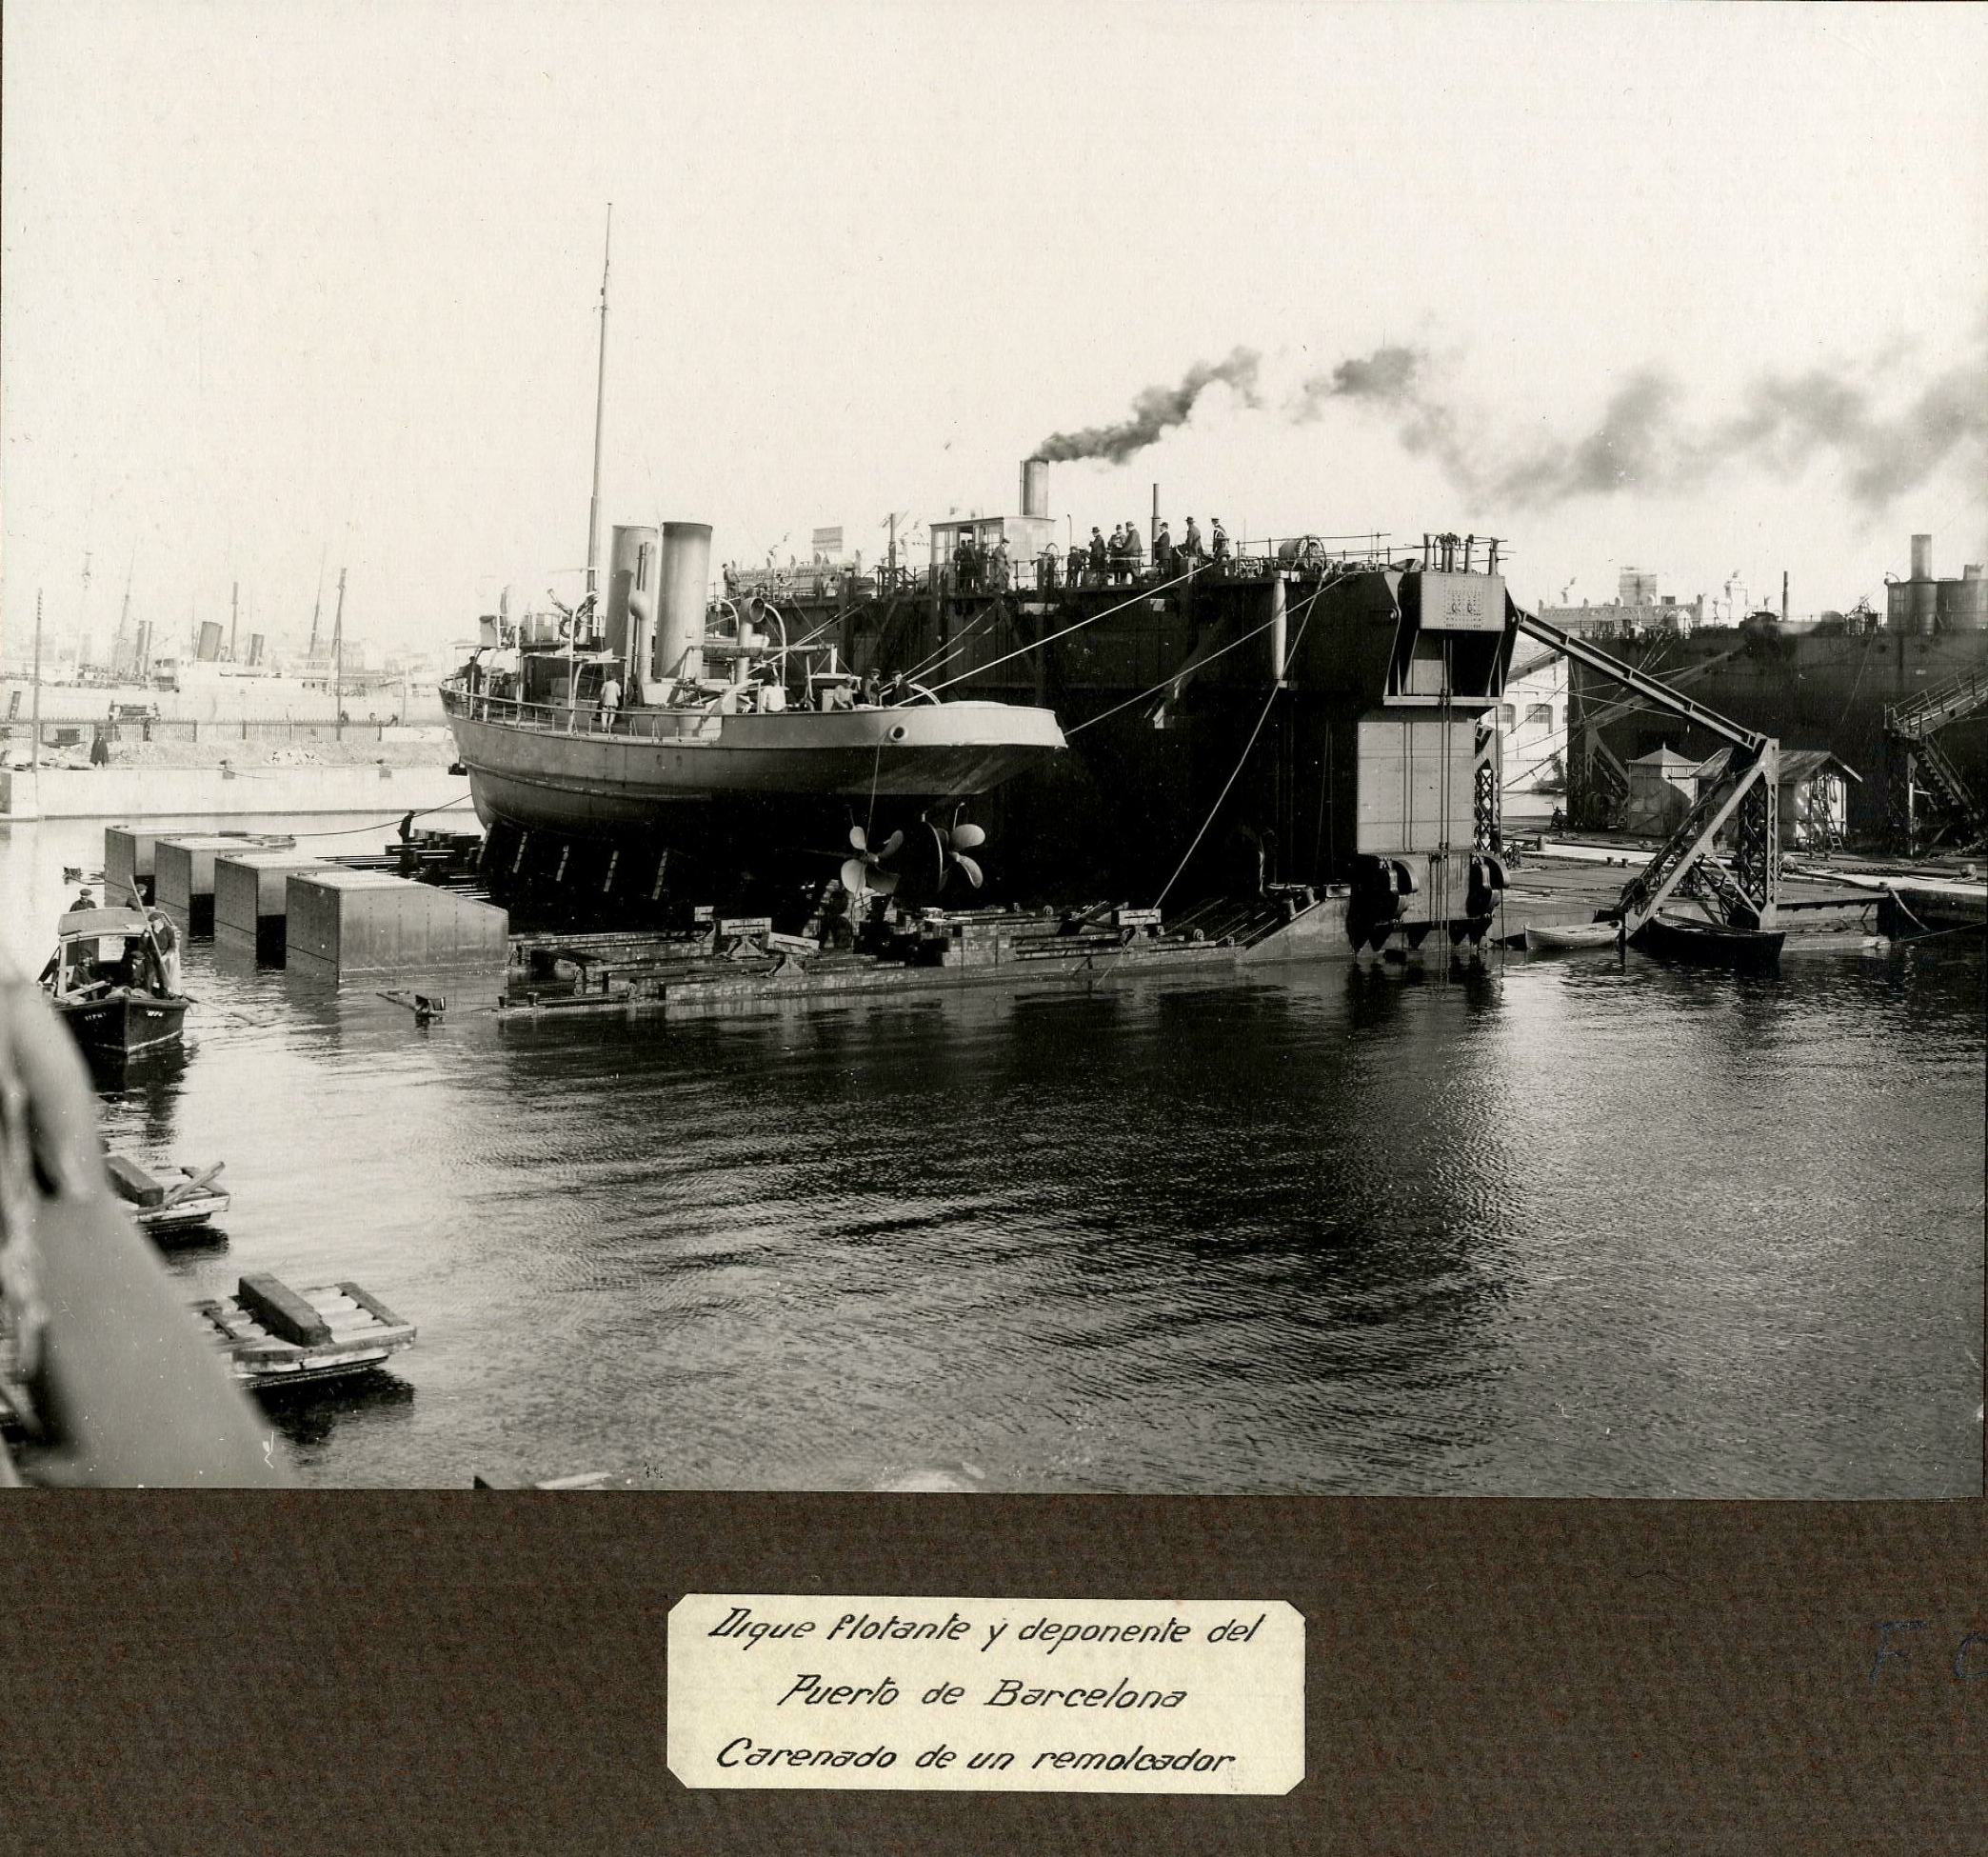 Dique flotante y deponente del puerto de Barcelona, carenado de un remolcador. 1900